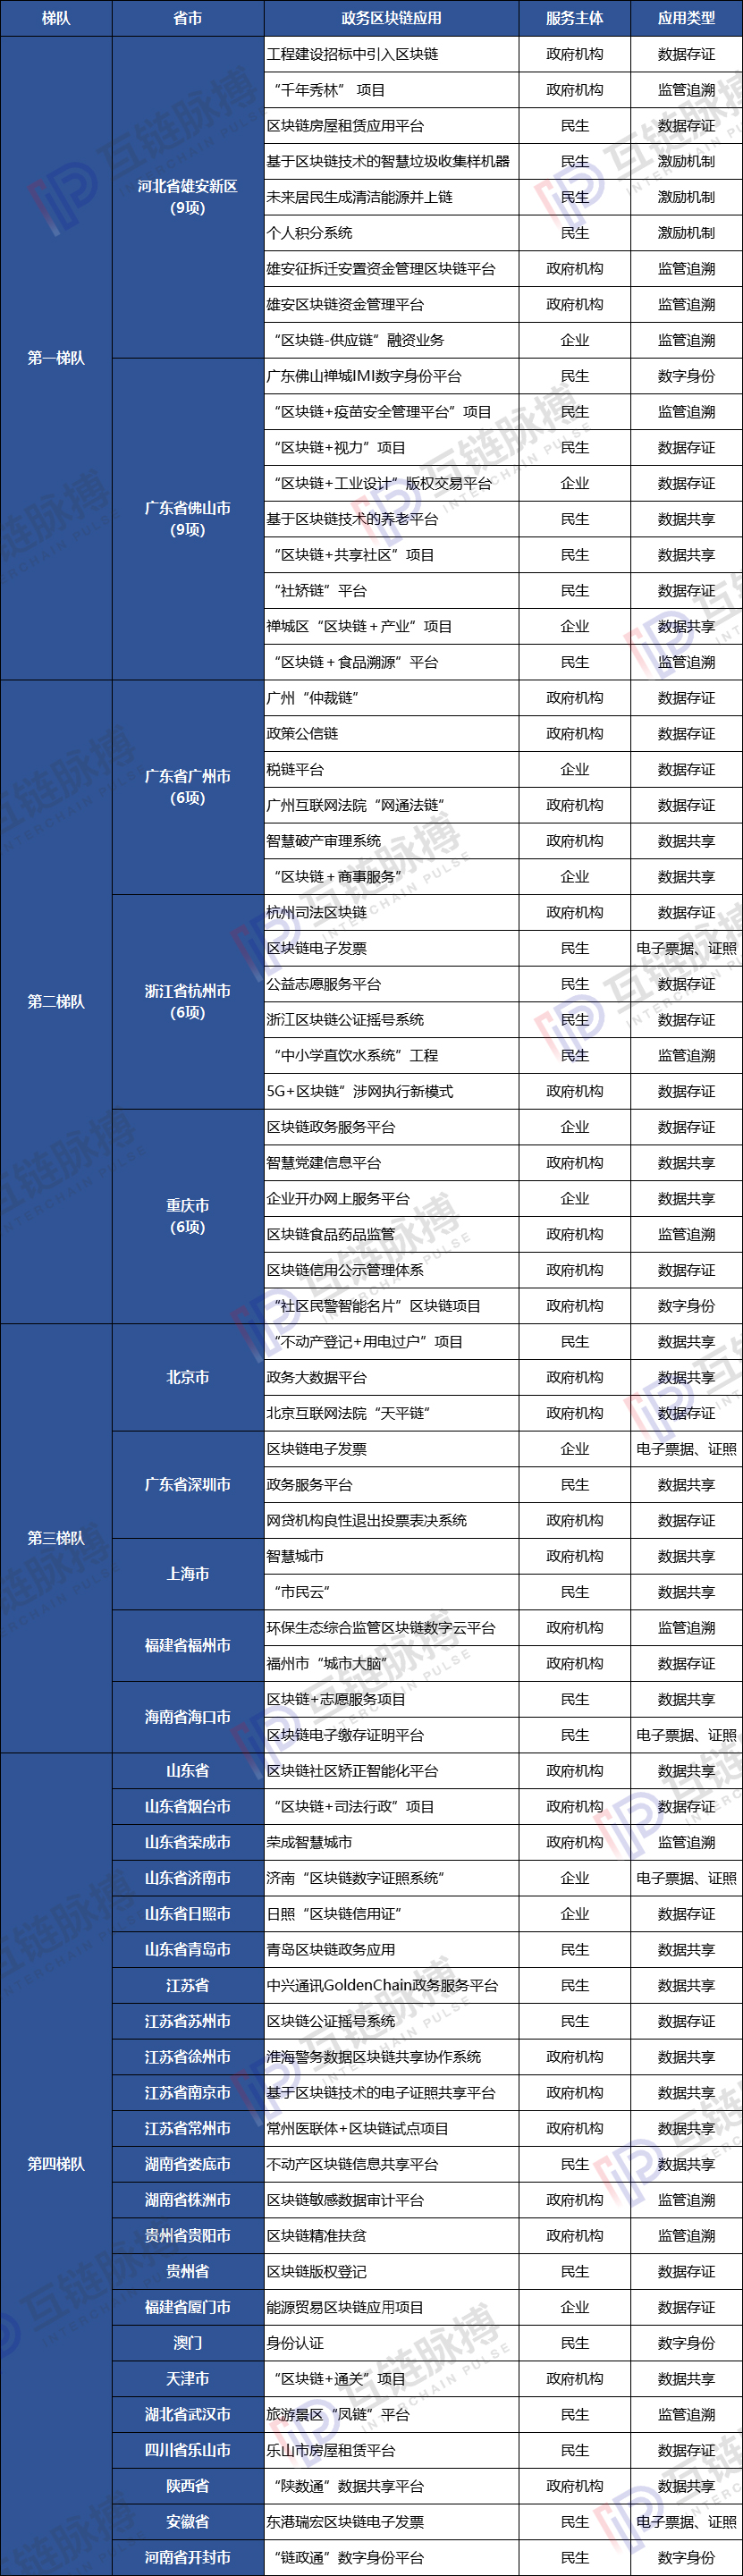 Beixiong An, Nanfoshan: Blockchain Government Application C City Has Been Out | Blockchain Municipal Application